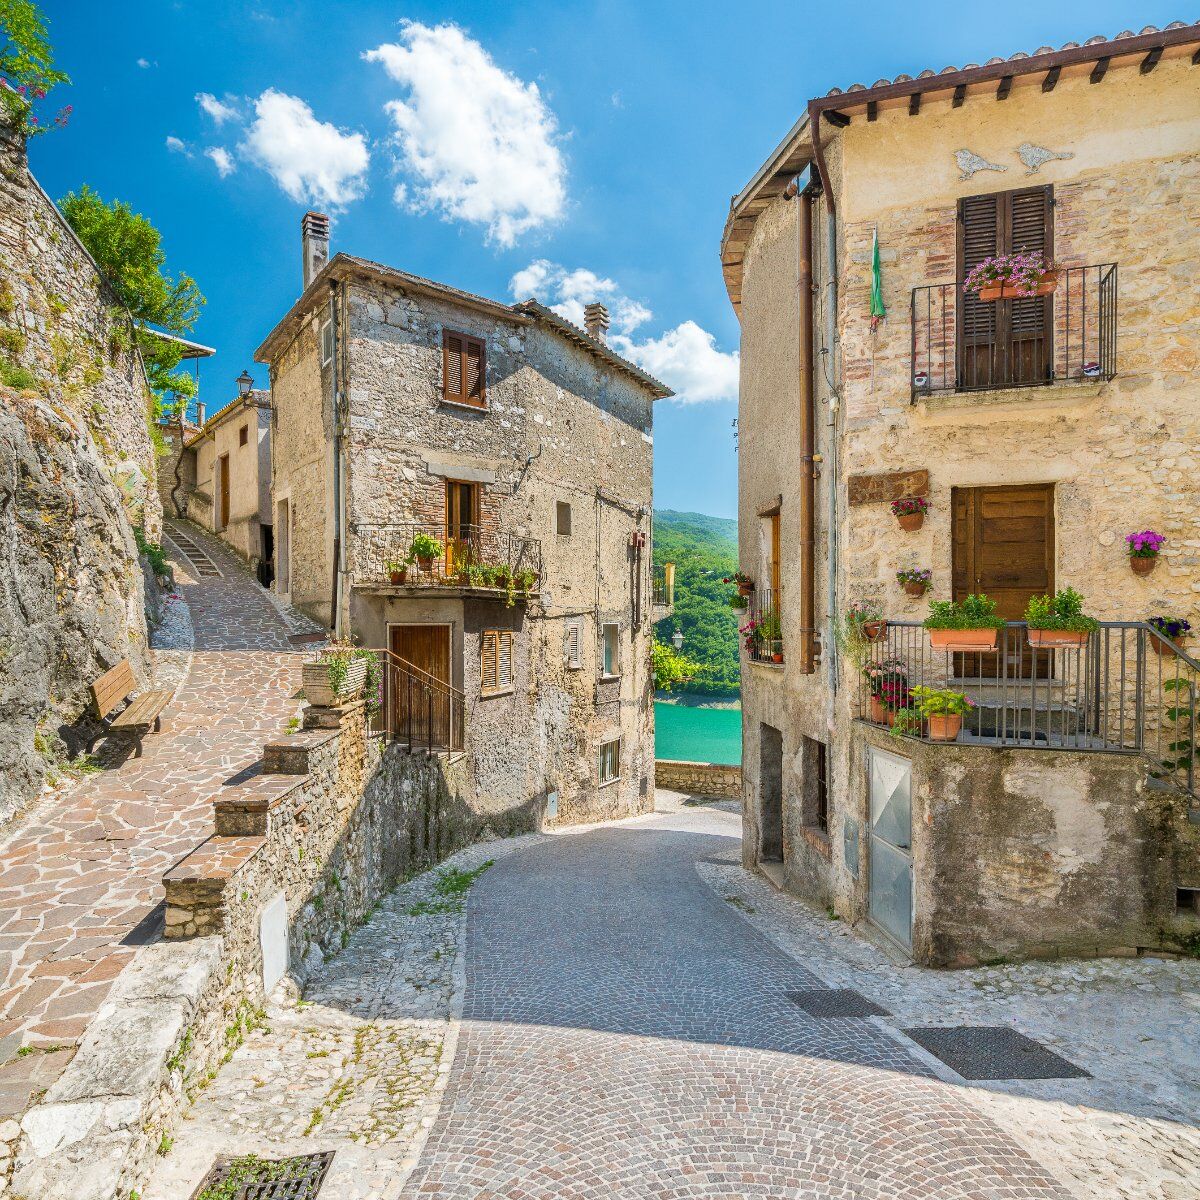 Passeggiata a Castel di Tora: la perla medievale del Lazio desktop picture